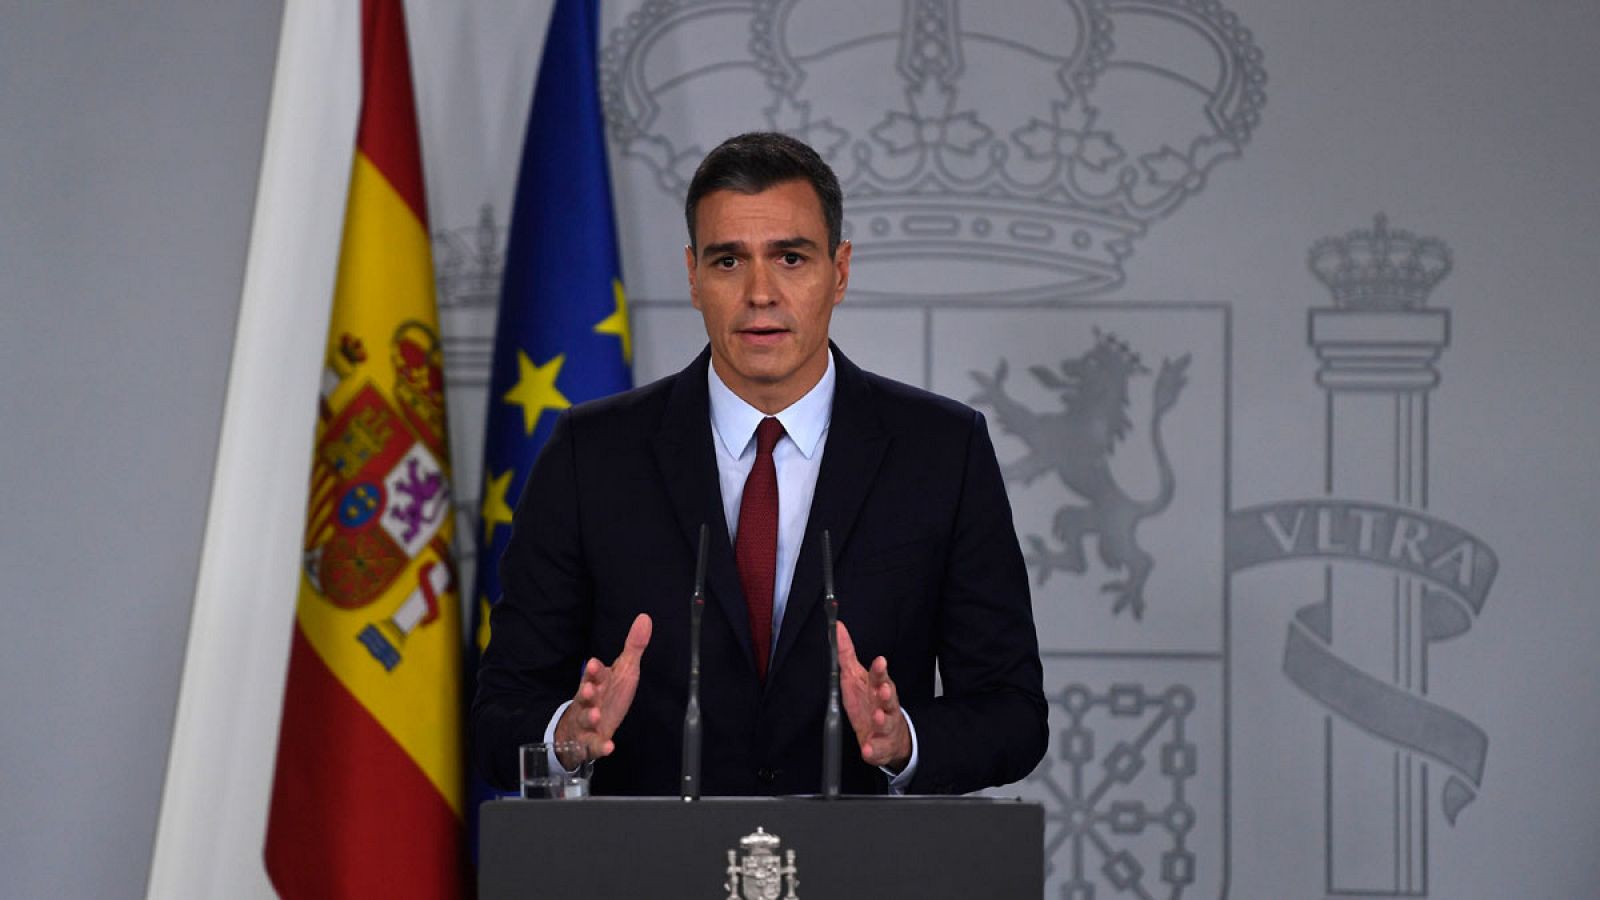 Exhumación de Franco: Pedro Sánchez: "Hoy España pone fin a una afrenta moral"